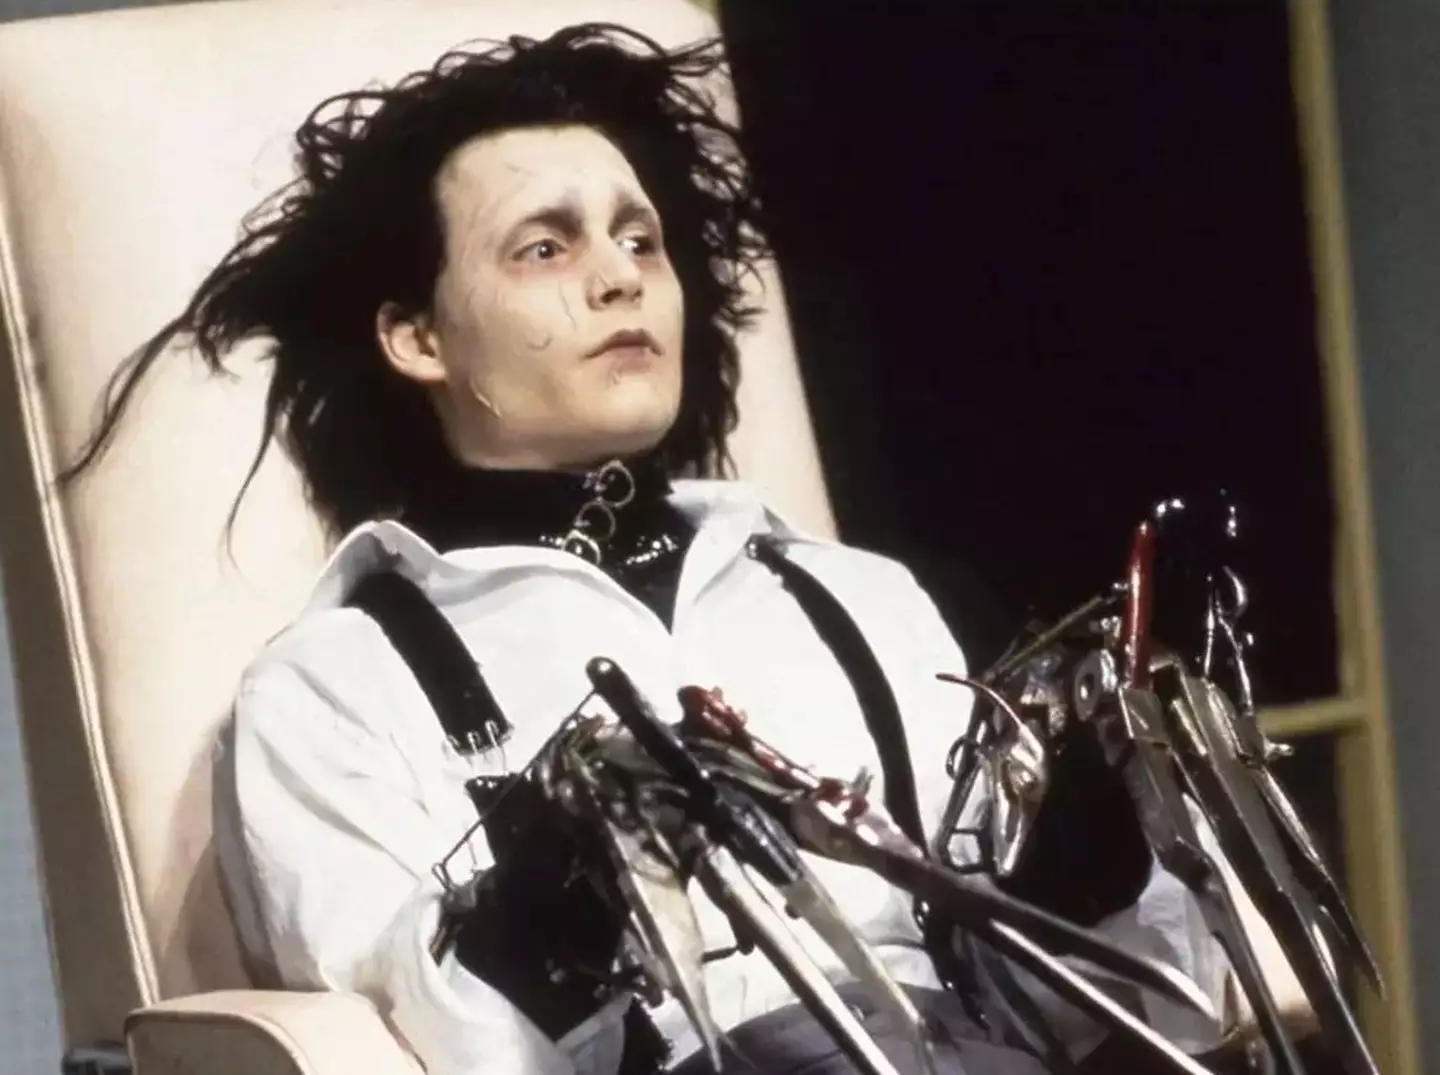 Johnny Depp in Tim Burton's Edward Scissorhands.